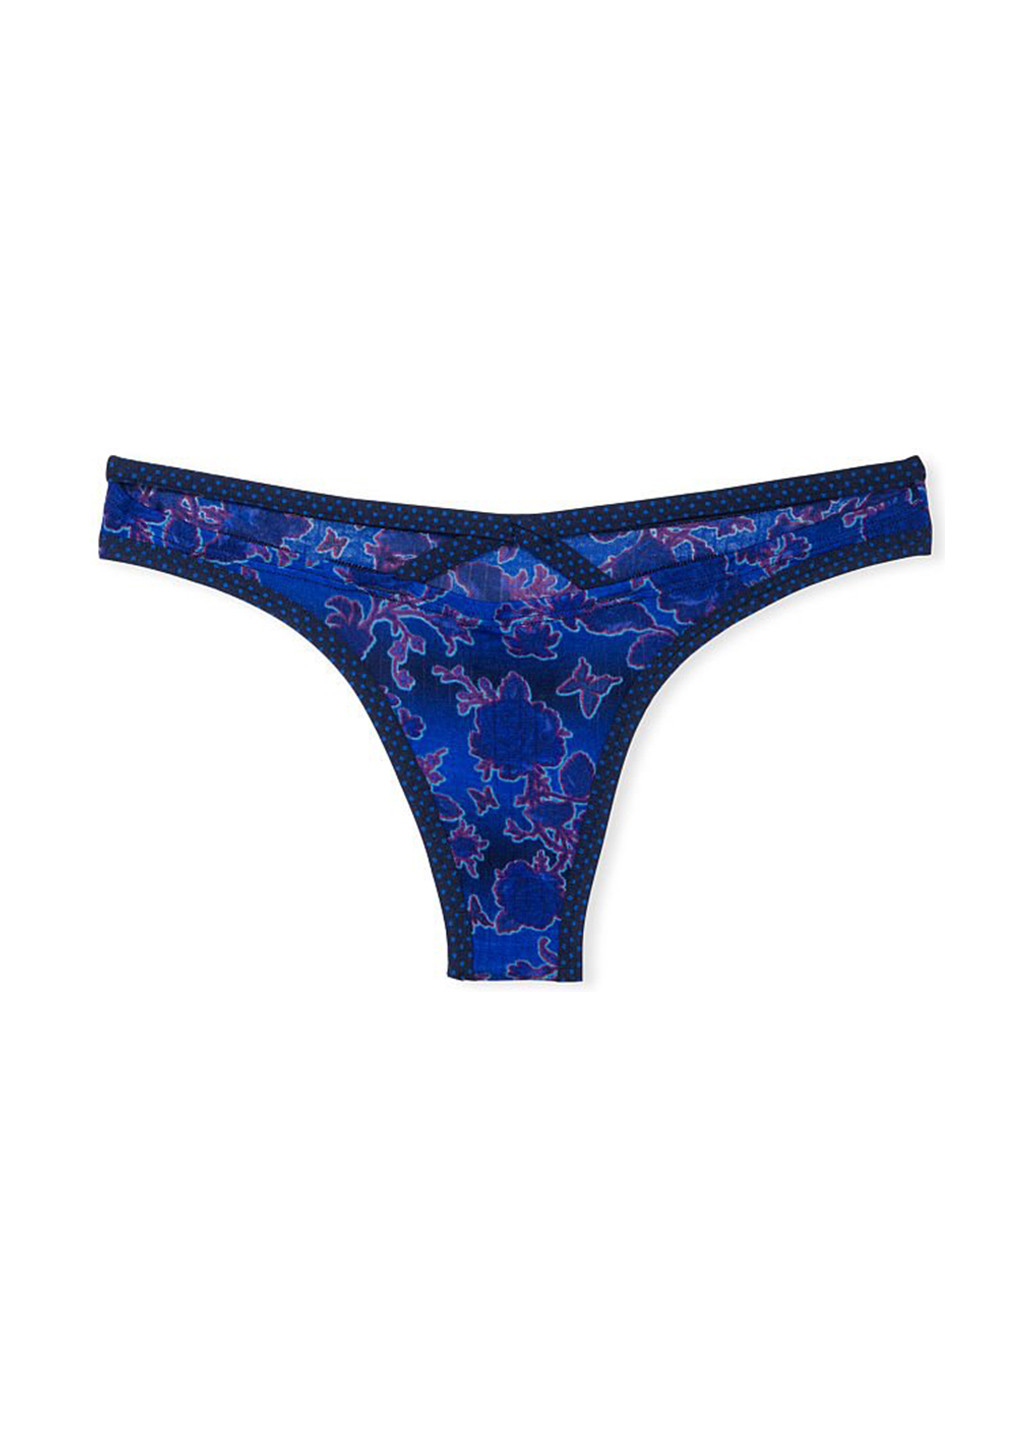 Трусики Victoria's Secret тонг бабочки синие откровенные модал